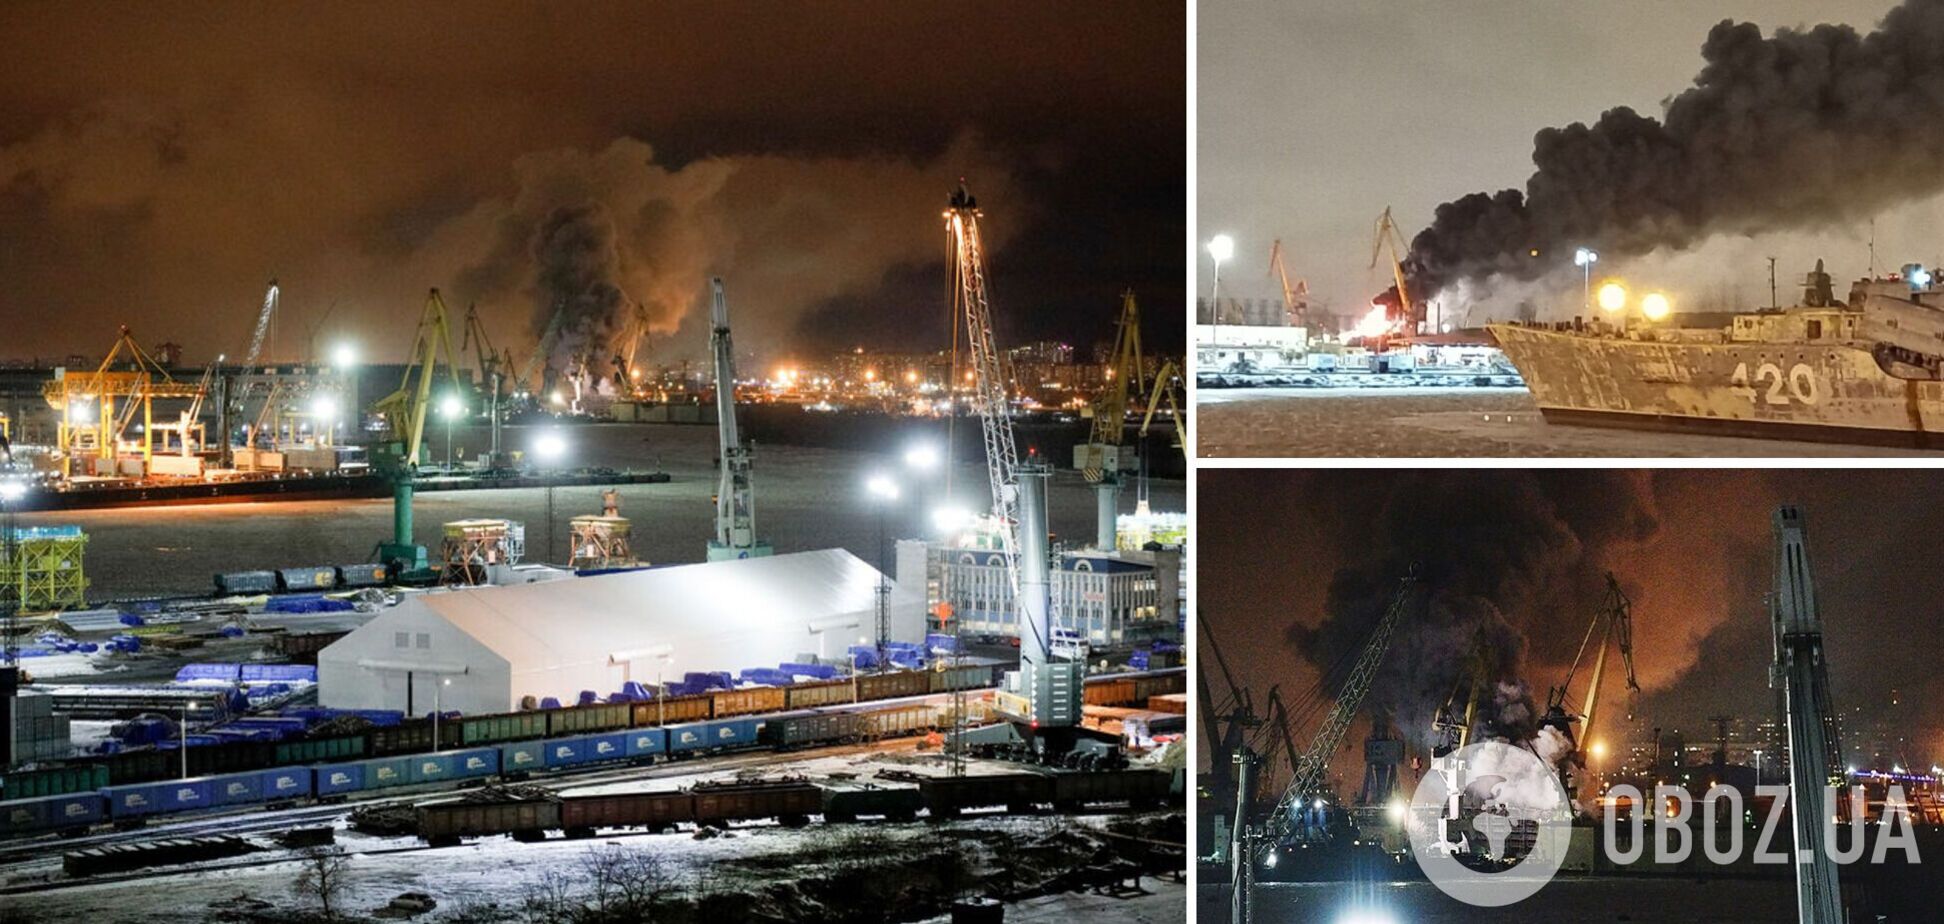 В России загорелся недостроенный военный корабль, есть пострадавшие. Фото и видео